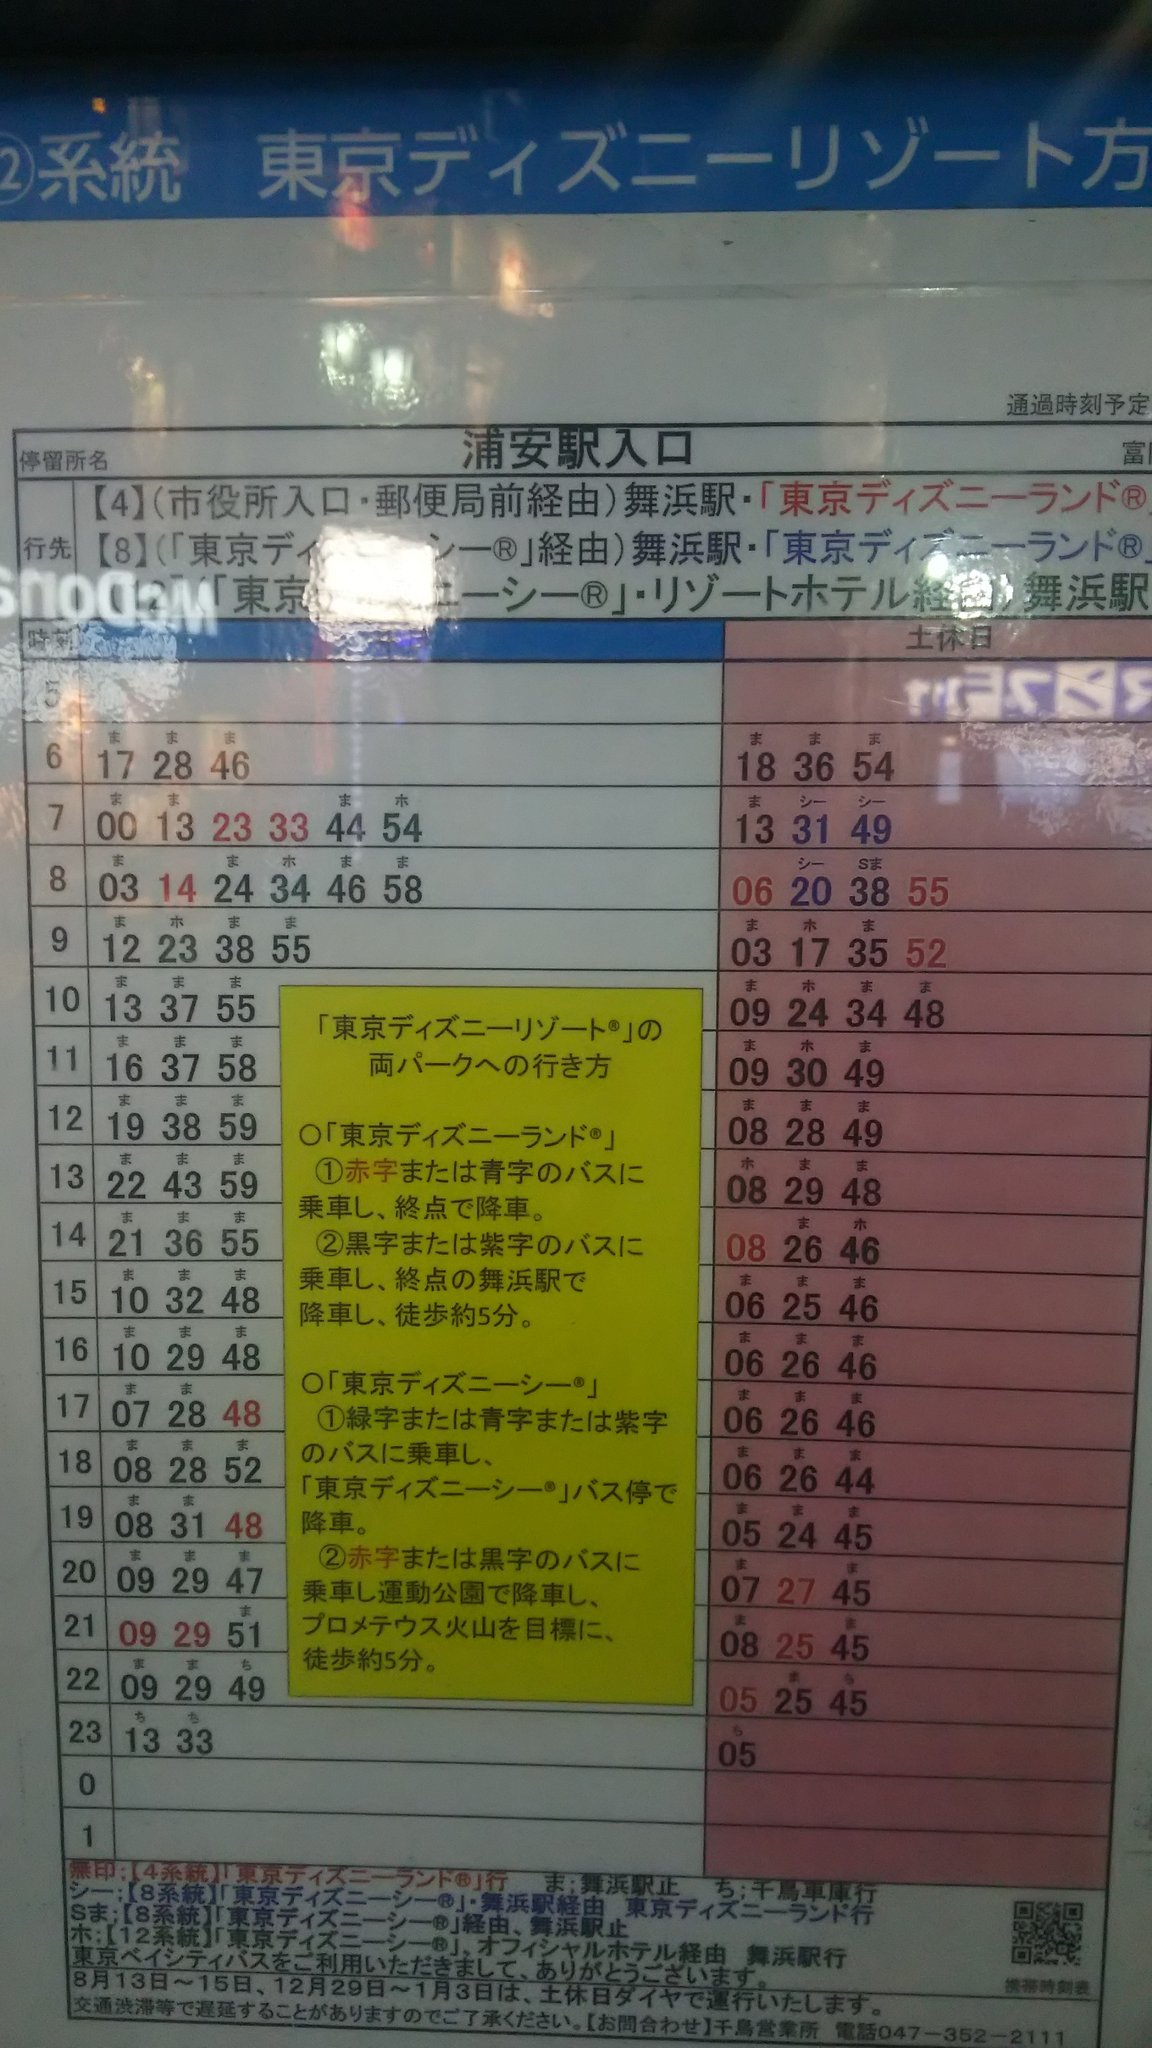 た け し 東京メトロ浦安駅ロータリーにある東京ディズニーリゾート方面のバス時刻表 まさか時刻表にプロメテウス火山と書かれているとは ちょっとした驚き 東京メトロ 浦安駅 東京ベイシティ交通 東京ディズニーリゾート